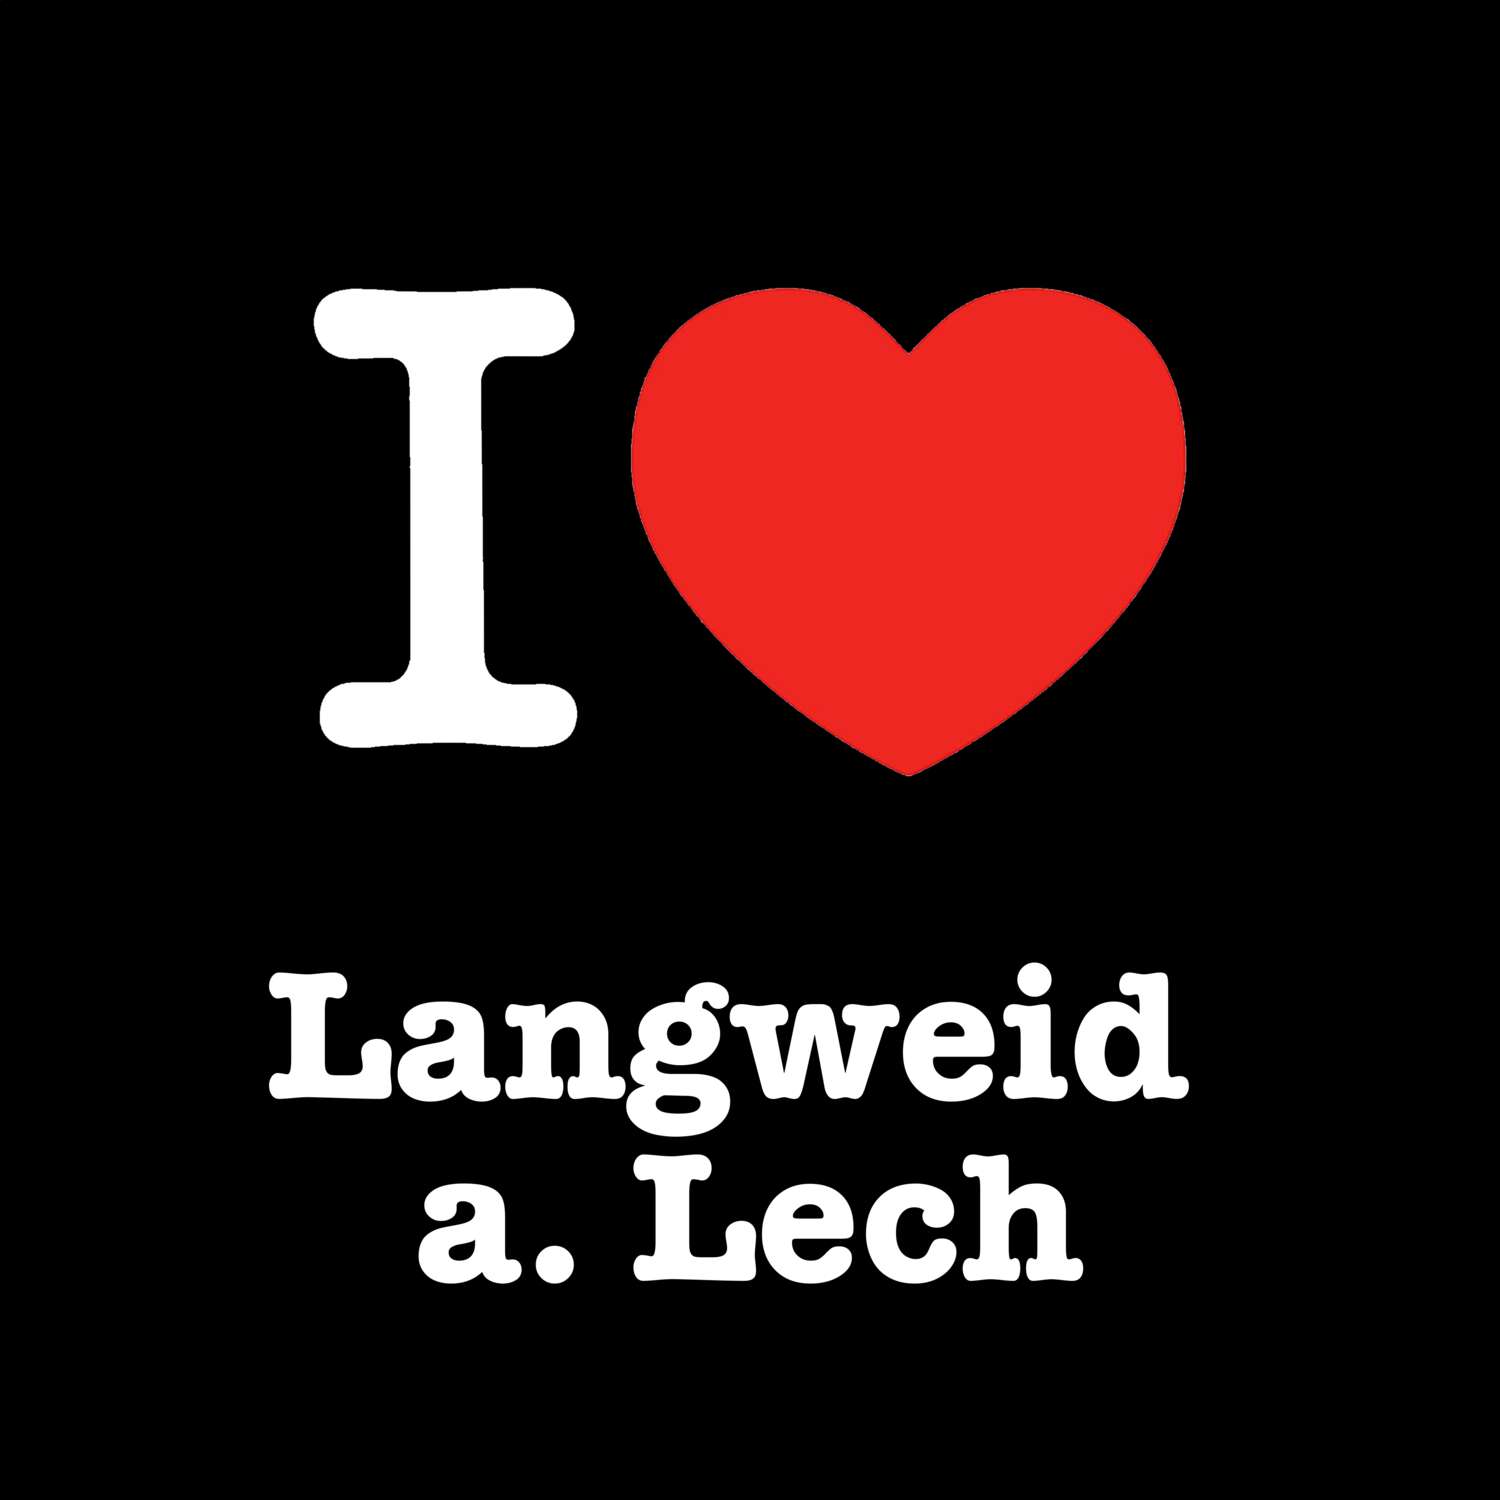 Langweid a. Lech T-Shirt »I love«